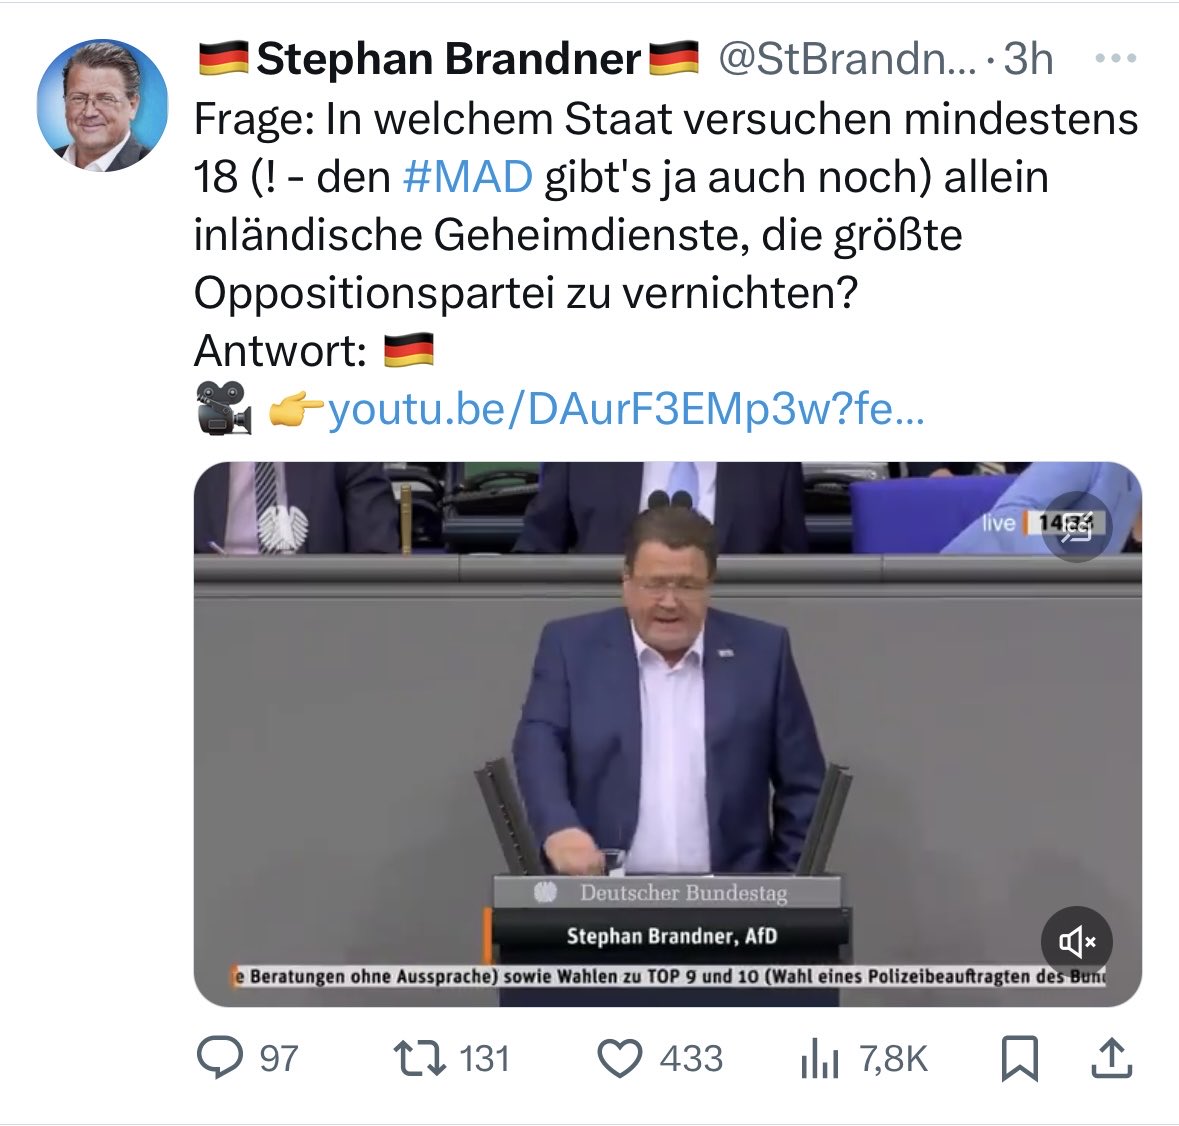 18 Inlandsgeheimdienste versuchen, die CDU zu „vernichten“? Ist ja ungeheuerlich!!